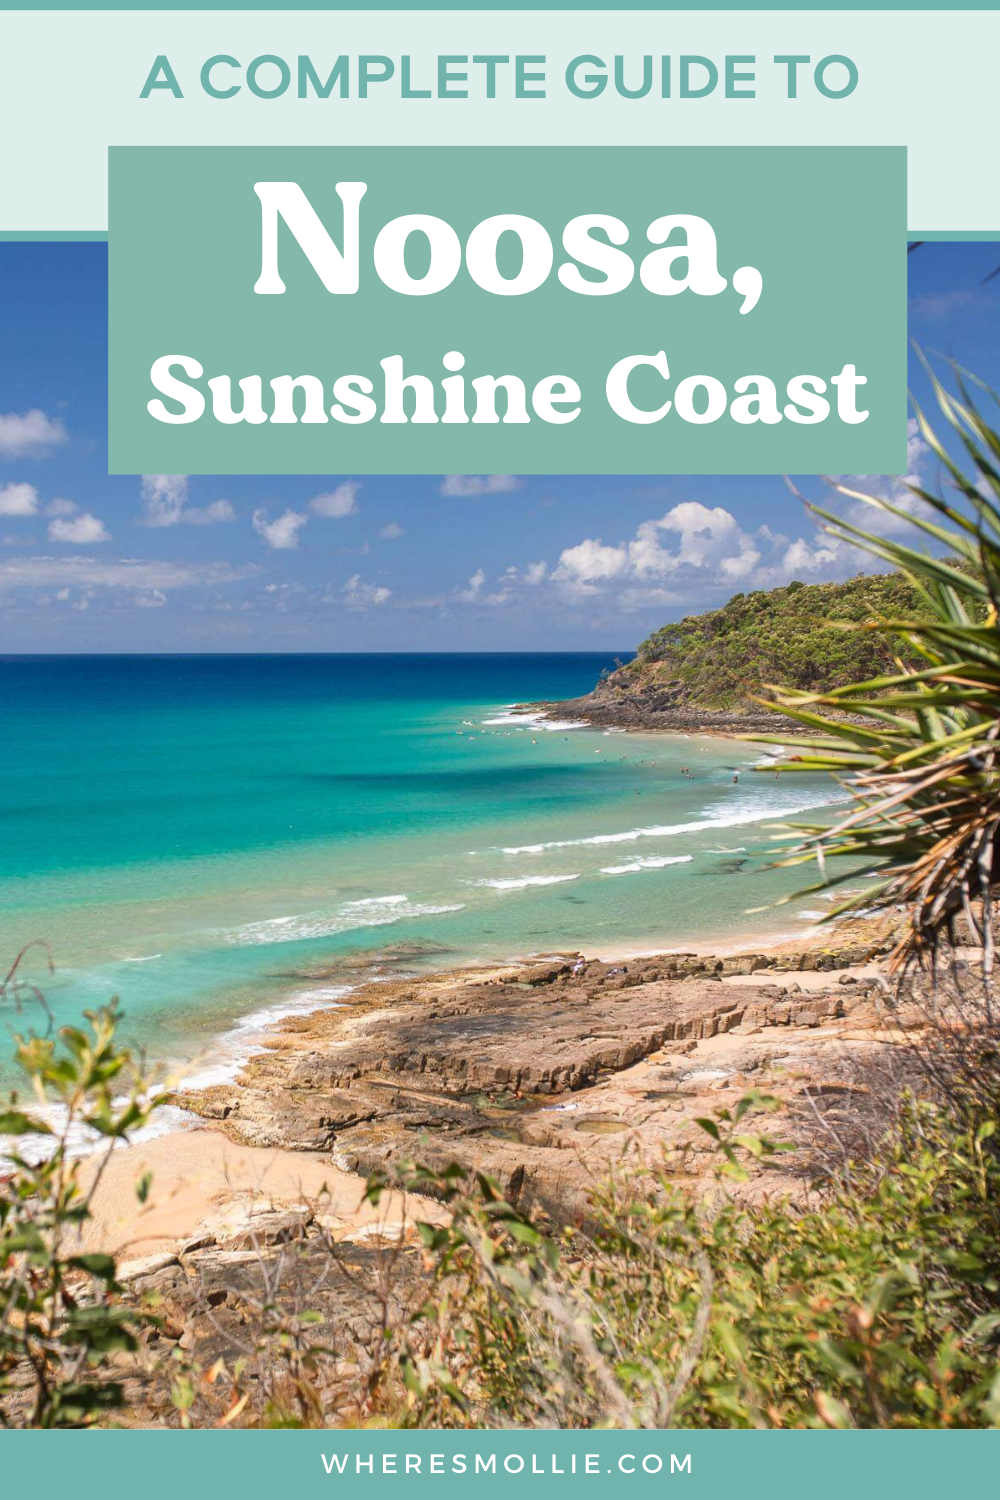 A guide to Noosa, Sunshine Coast